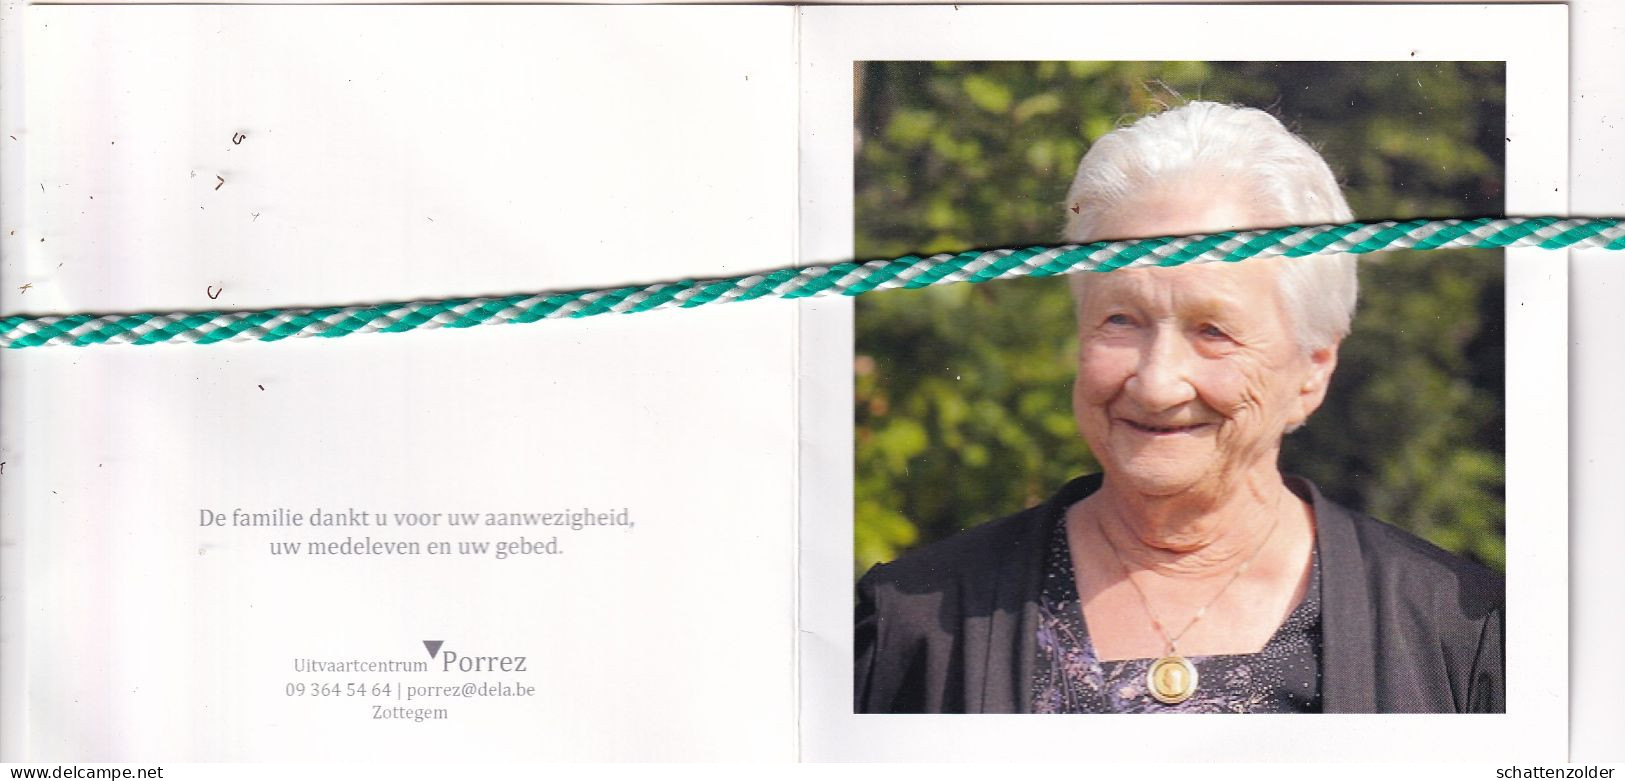 Marguerithe Van Vrekhem-De Mulder, Sint-Lievens-Houtem 1924, 2016. Foto - Obituary Notices